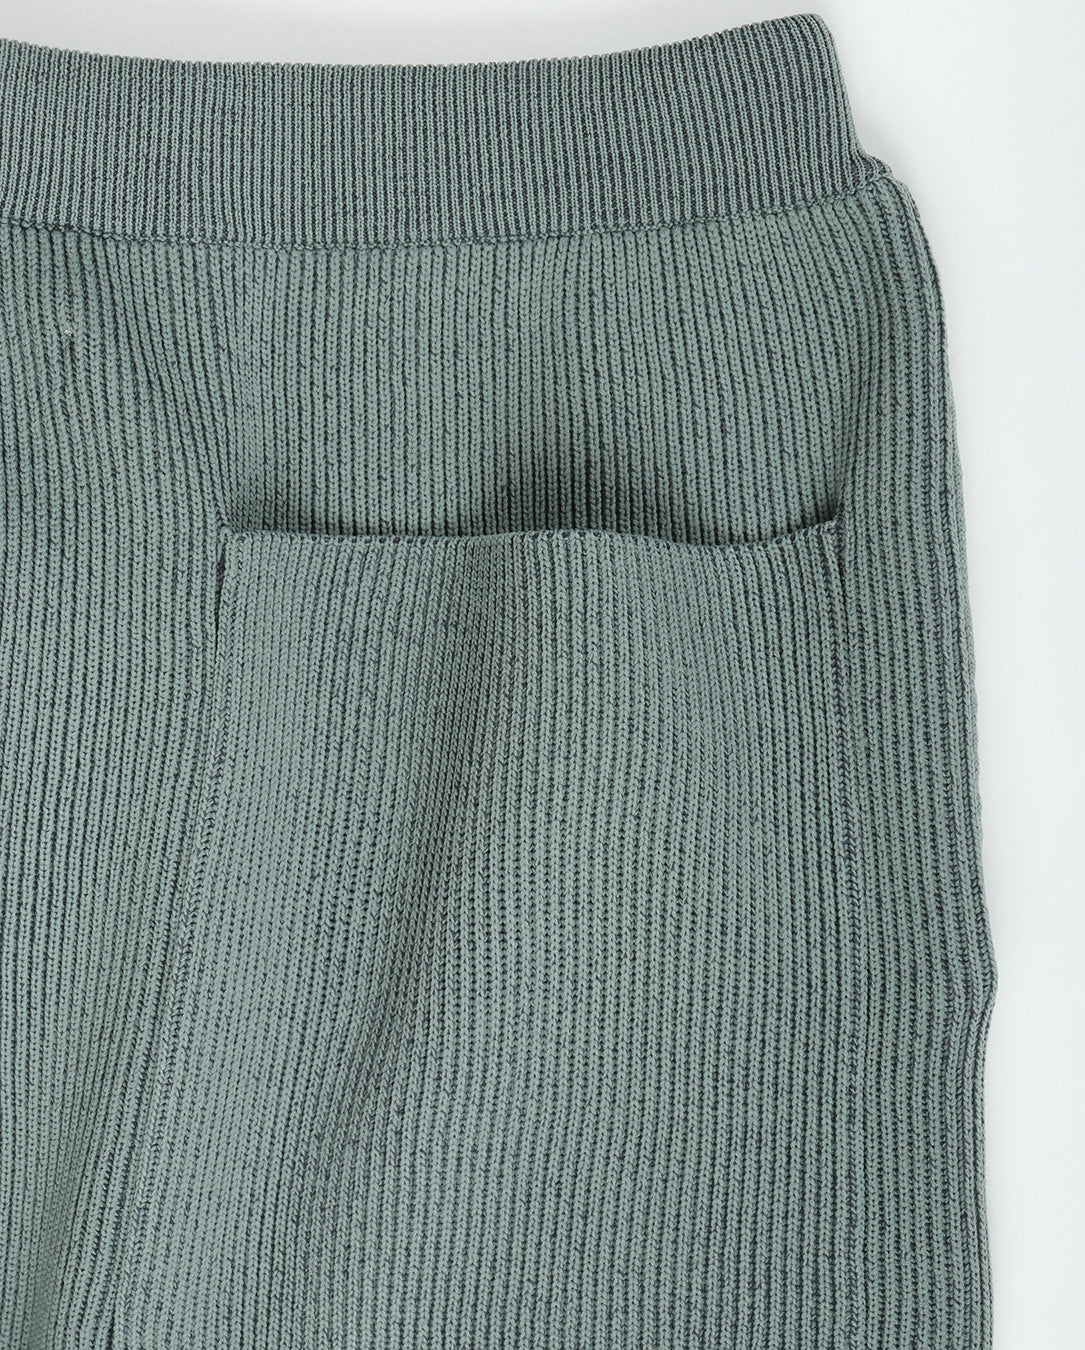 Ridge Knit Pants grey